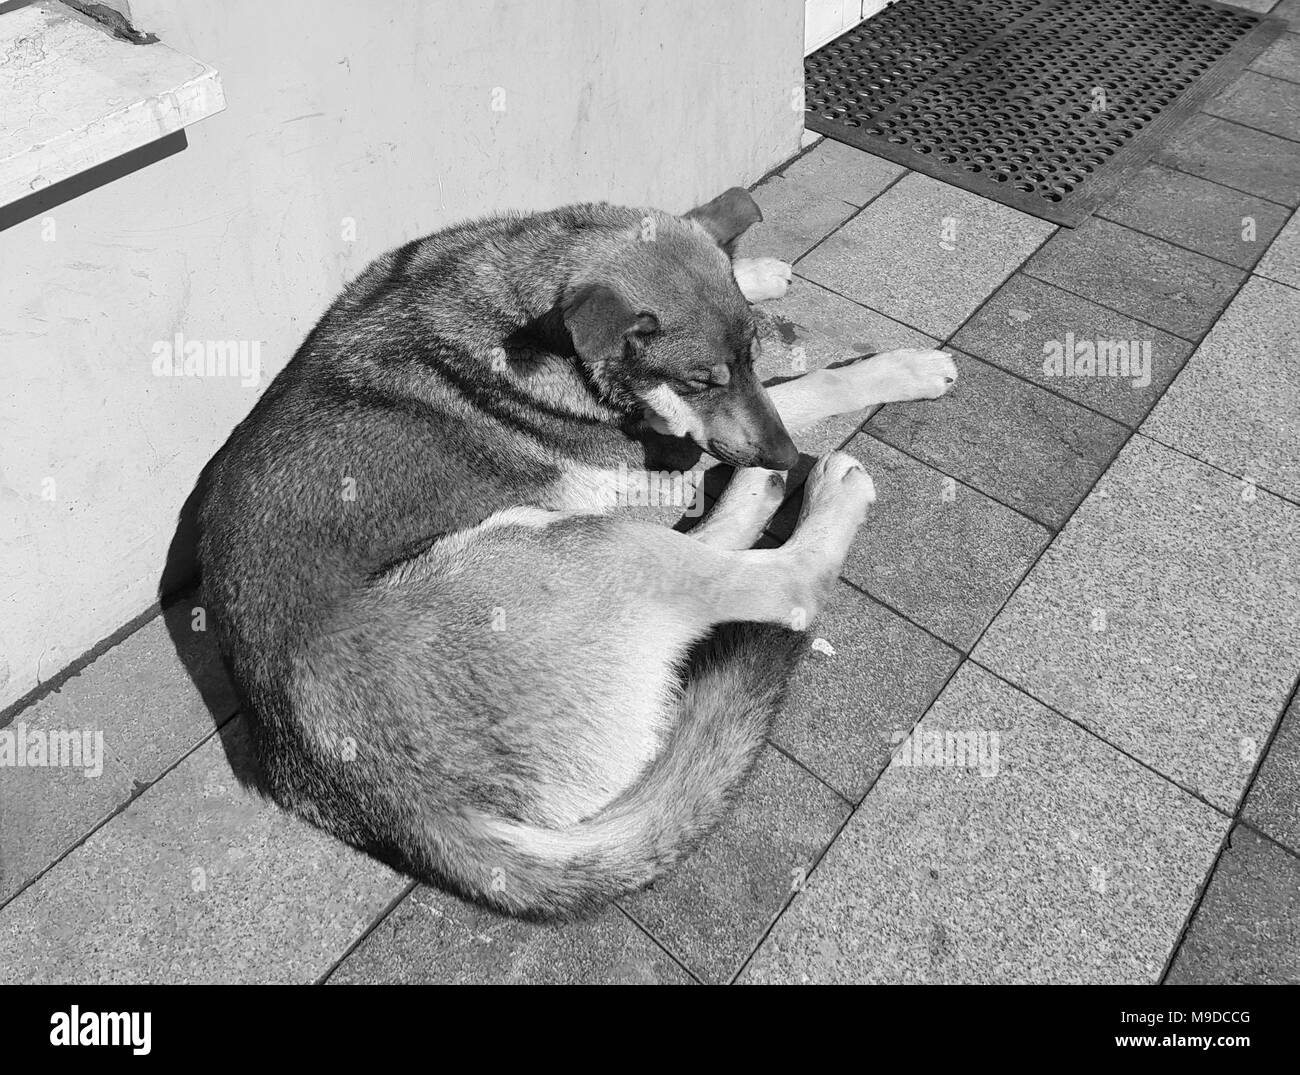 Photo d'un chien de la rue portant sur un trottoir en granit au début du printemps la fin de l'hiver, en noir et blanc, des détails croustillants, style journaliste Banque D'Images